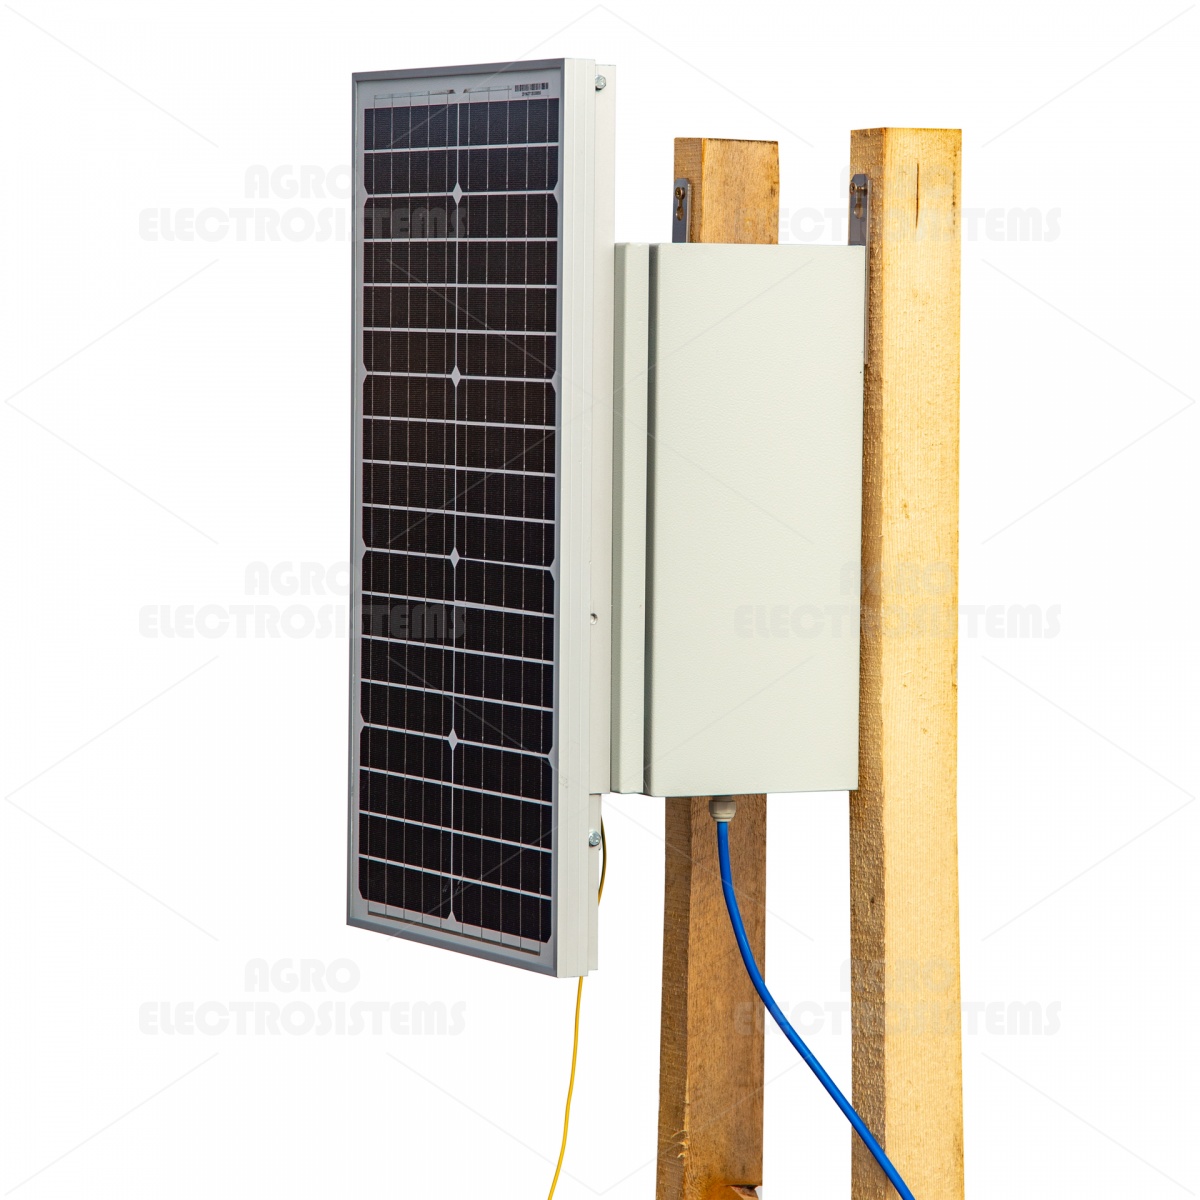 Kompakt DL 7200 villanypásztor készülék 50 W-os napelemes rendszerrel